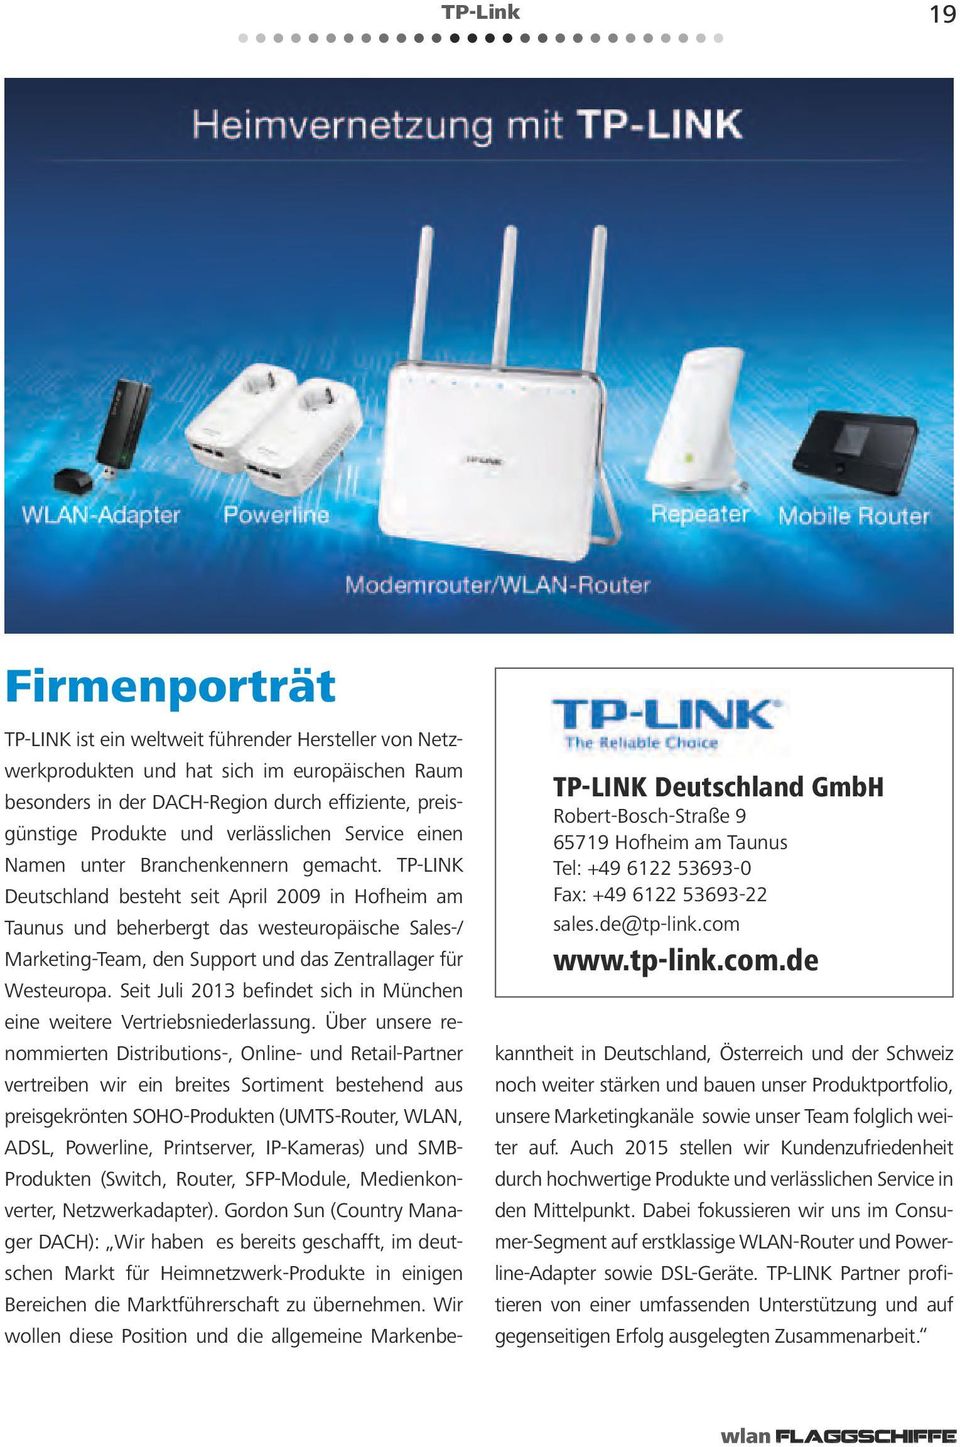 TP-LINK Deutschland besteht seit April 2009 in Hofheim am Taunus und beherbergt das westeuropäische Sales-/ Marketing-Team, den Support und das Zentrallager für Westeuropa.